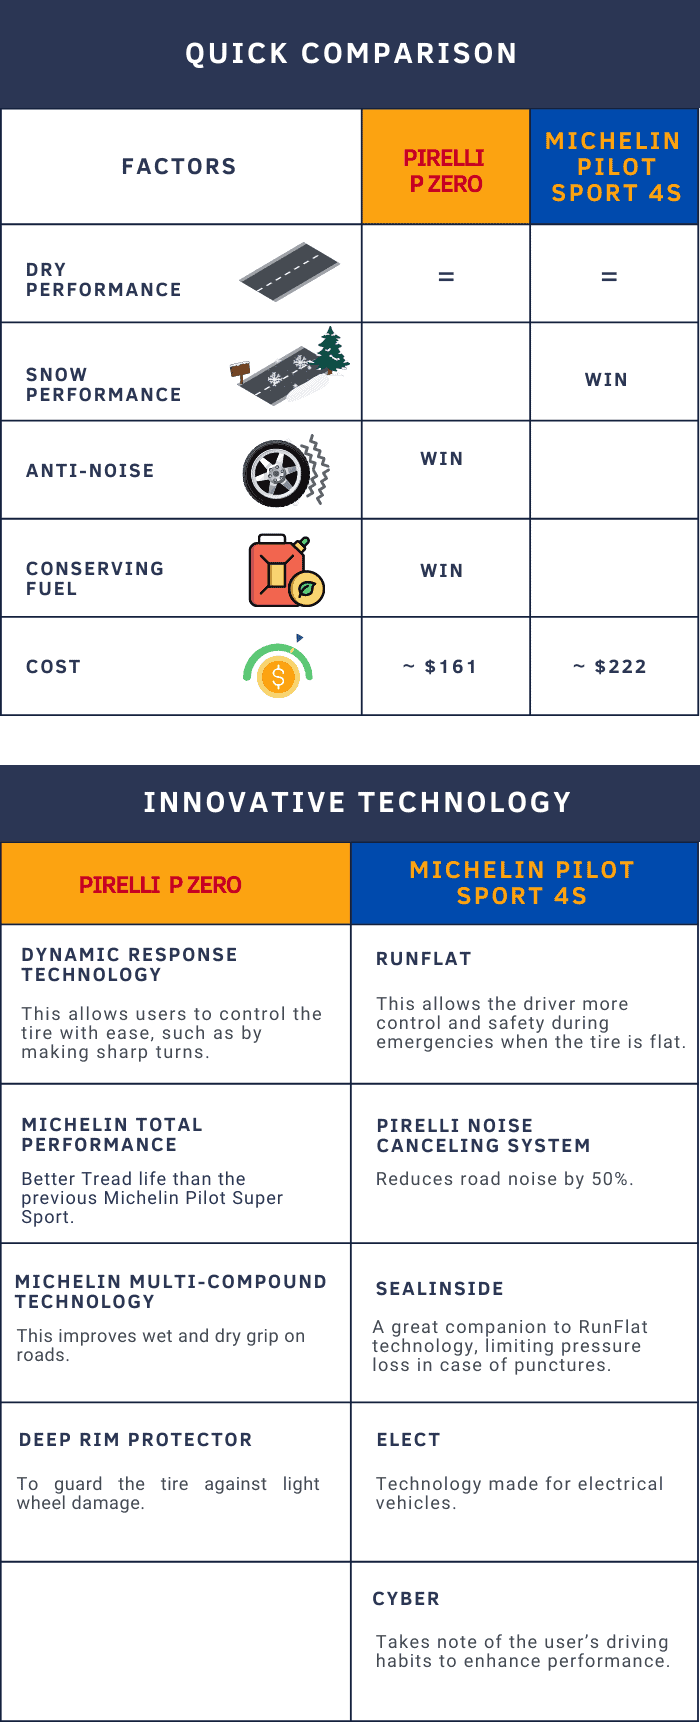 pirelli-p-zero-nero-gt-vs-michelin-pilot-super-sport